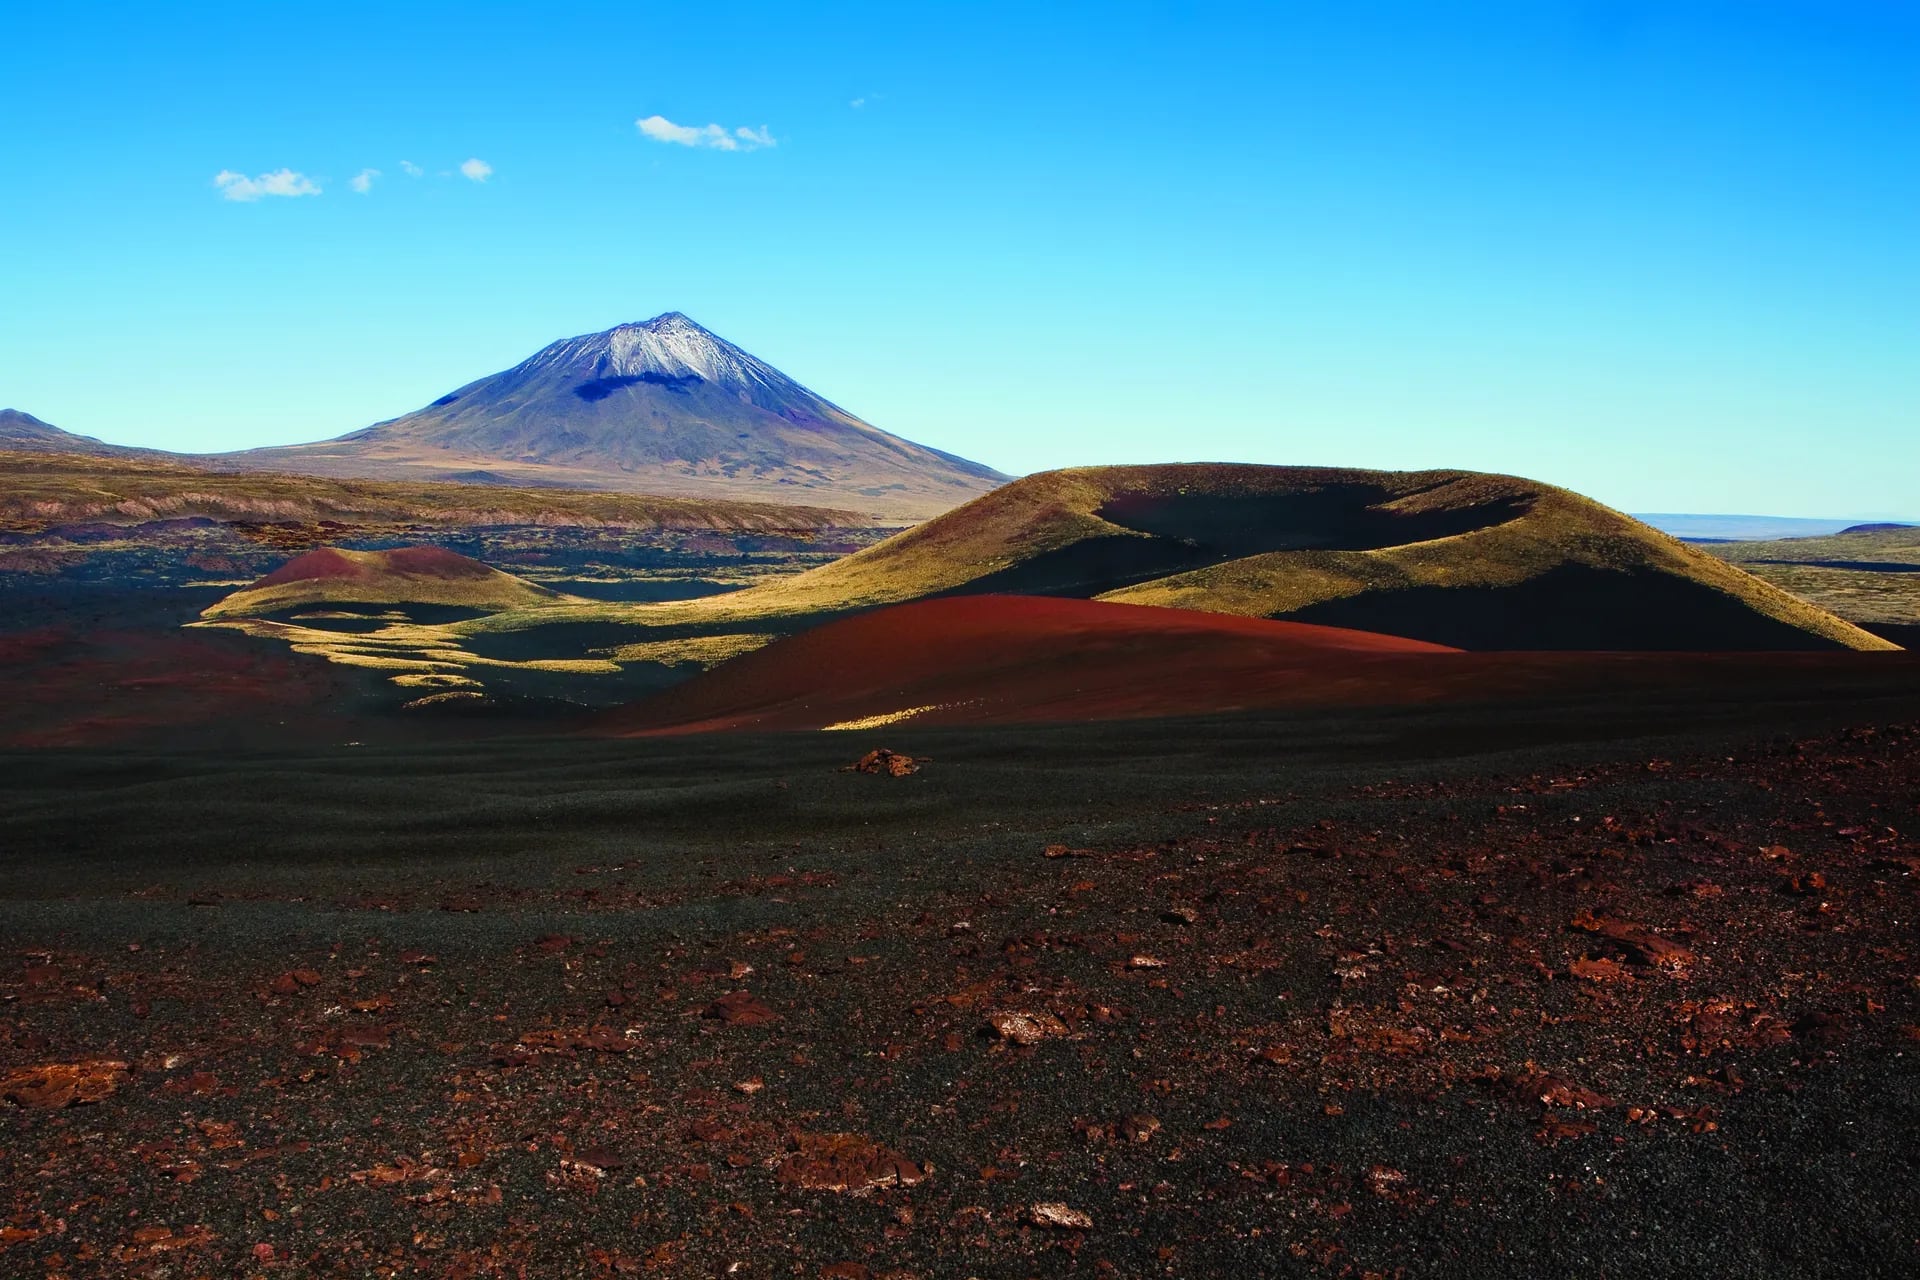 La Payunia, a 130 km de Malargüe, concentra 800 conos volcánicos cuyas manifestaciones configuraron un paisaje digno de otra parte, comparable a Marte.